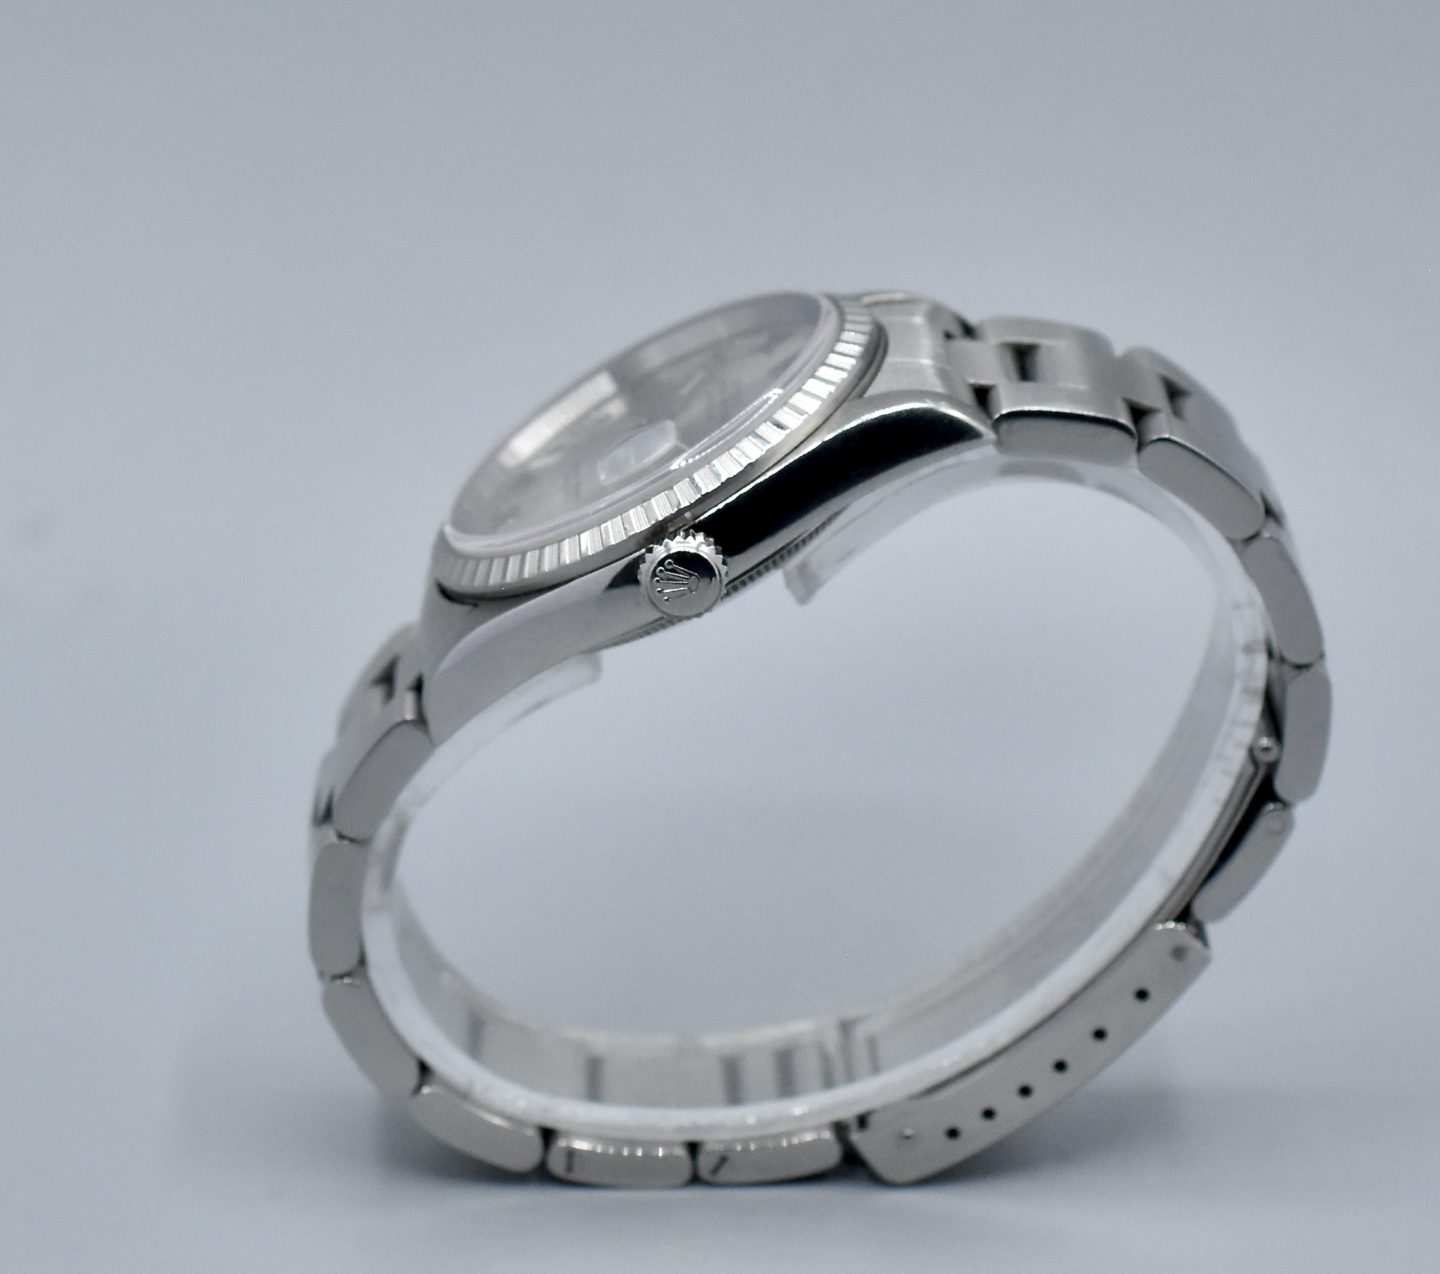 Rolex joint de fond de boites ref B29-213-66-C10 montres Rolex